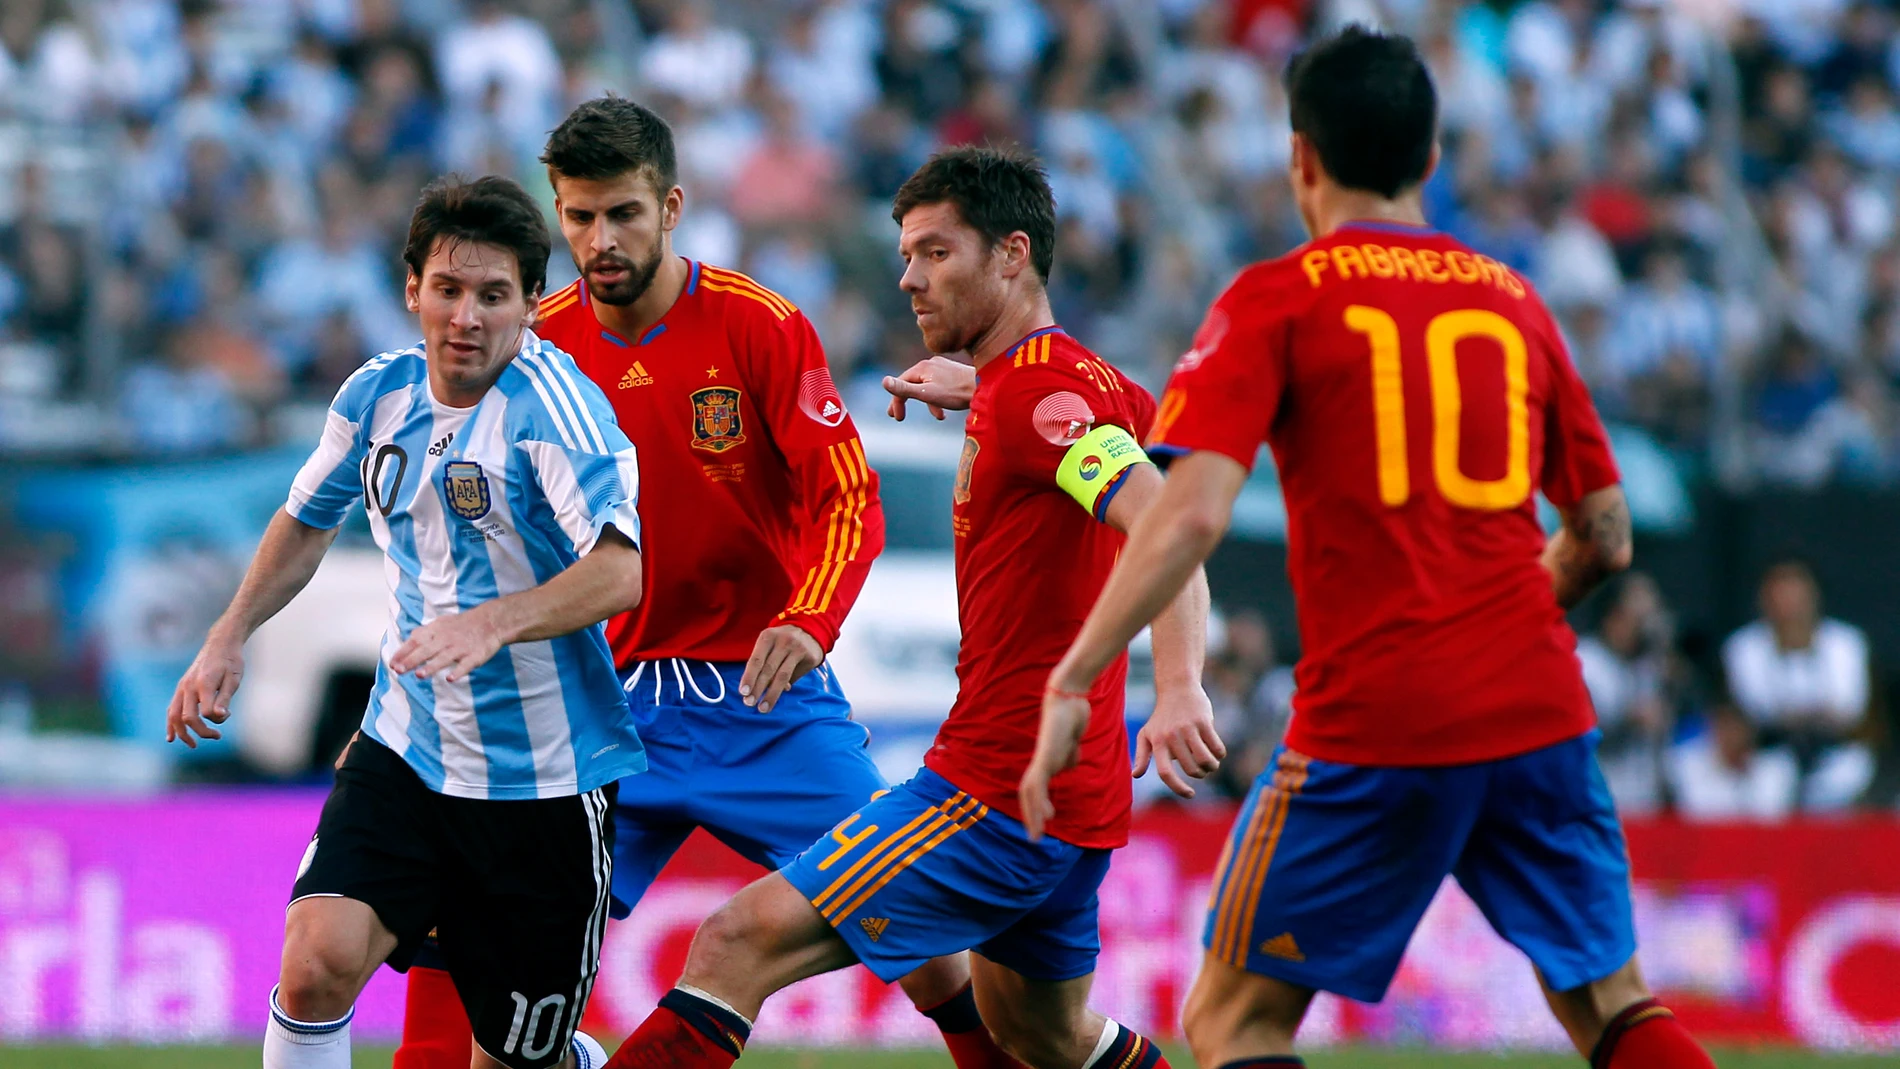 Messi controla el balón durante un partido contra España